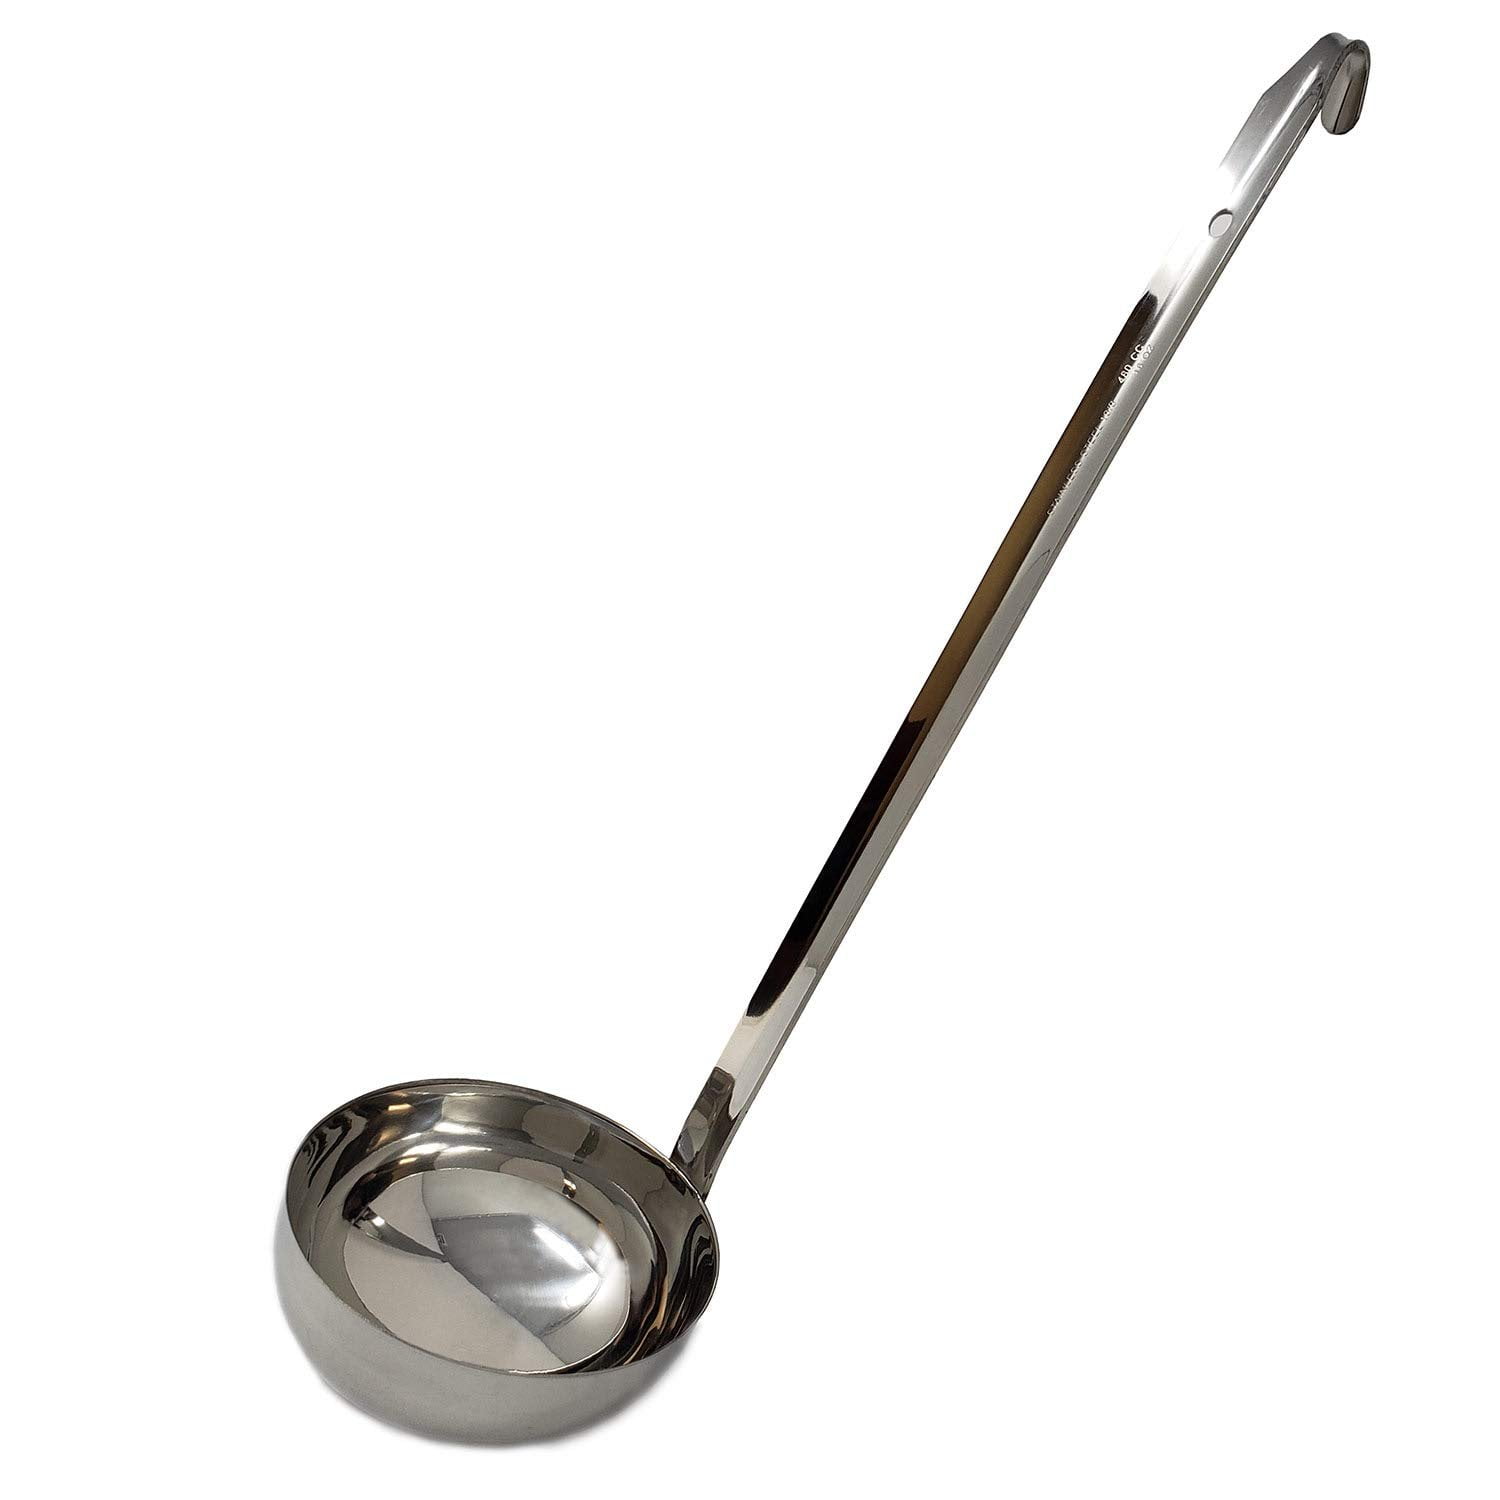 MLXR Soup Ladle, 3PCS Dinosaur Cute Long Handle Soup Spoons